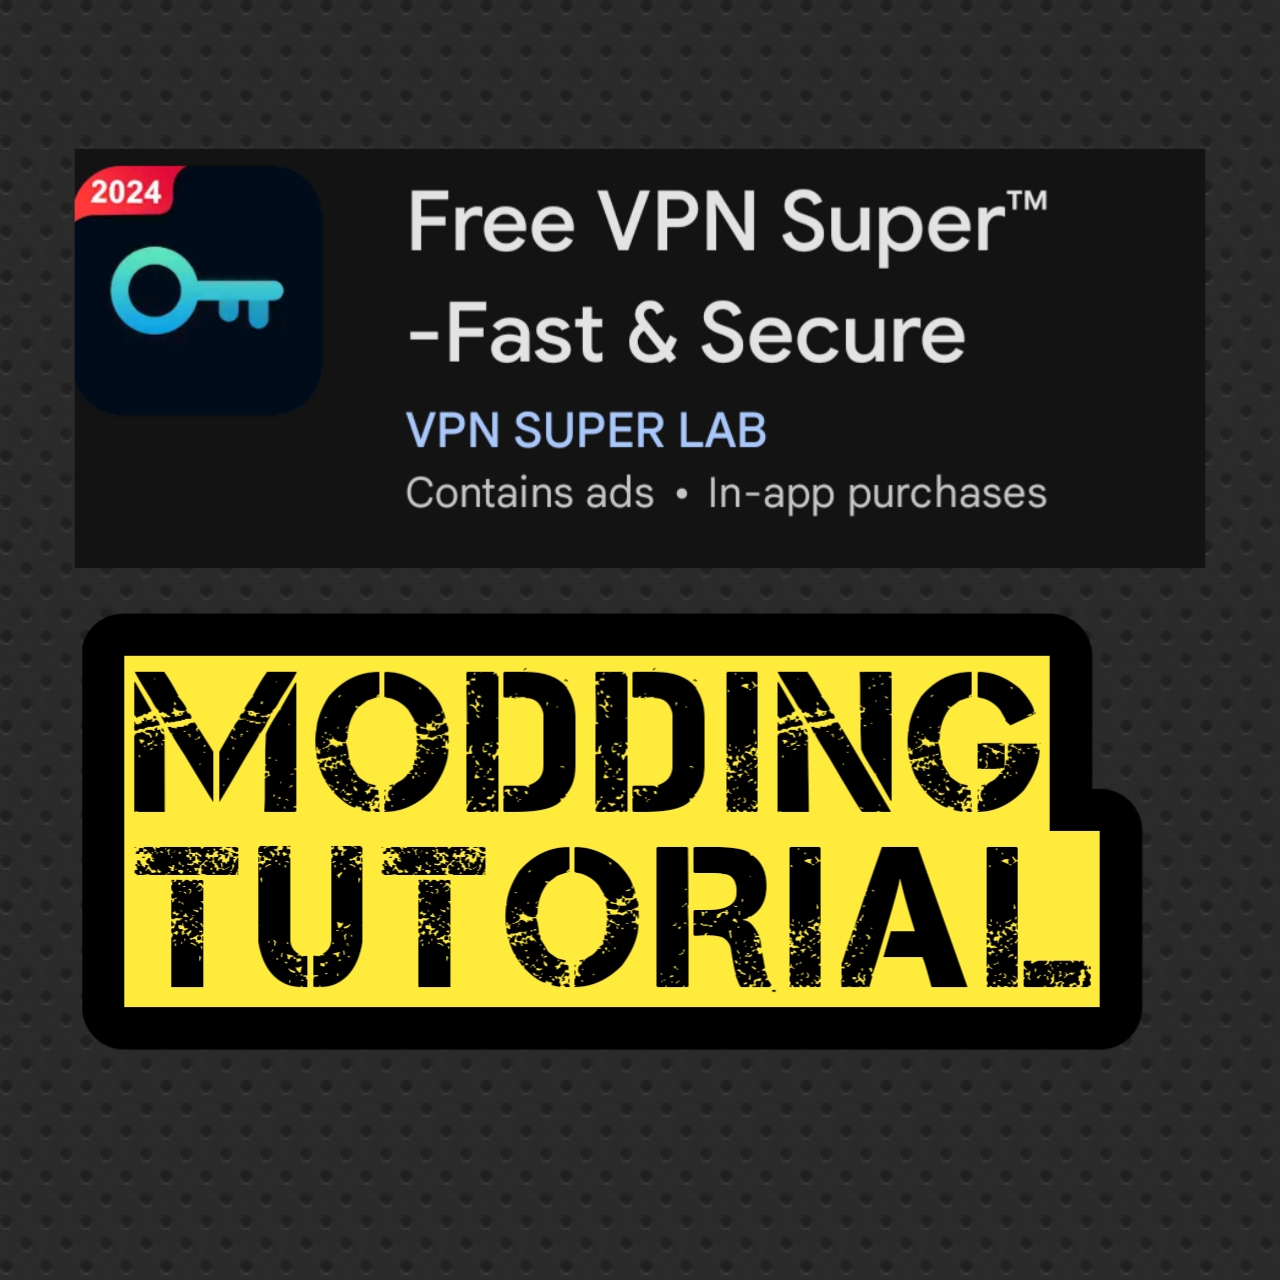 কিভাবে Free VPN  Super (Fast & Secure VPN) টি মোড করবেন ।